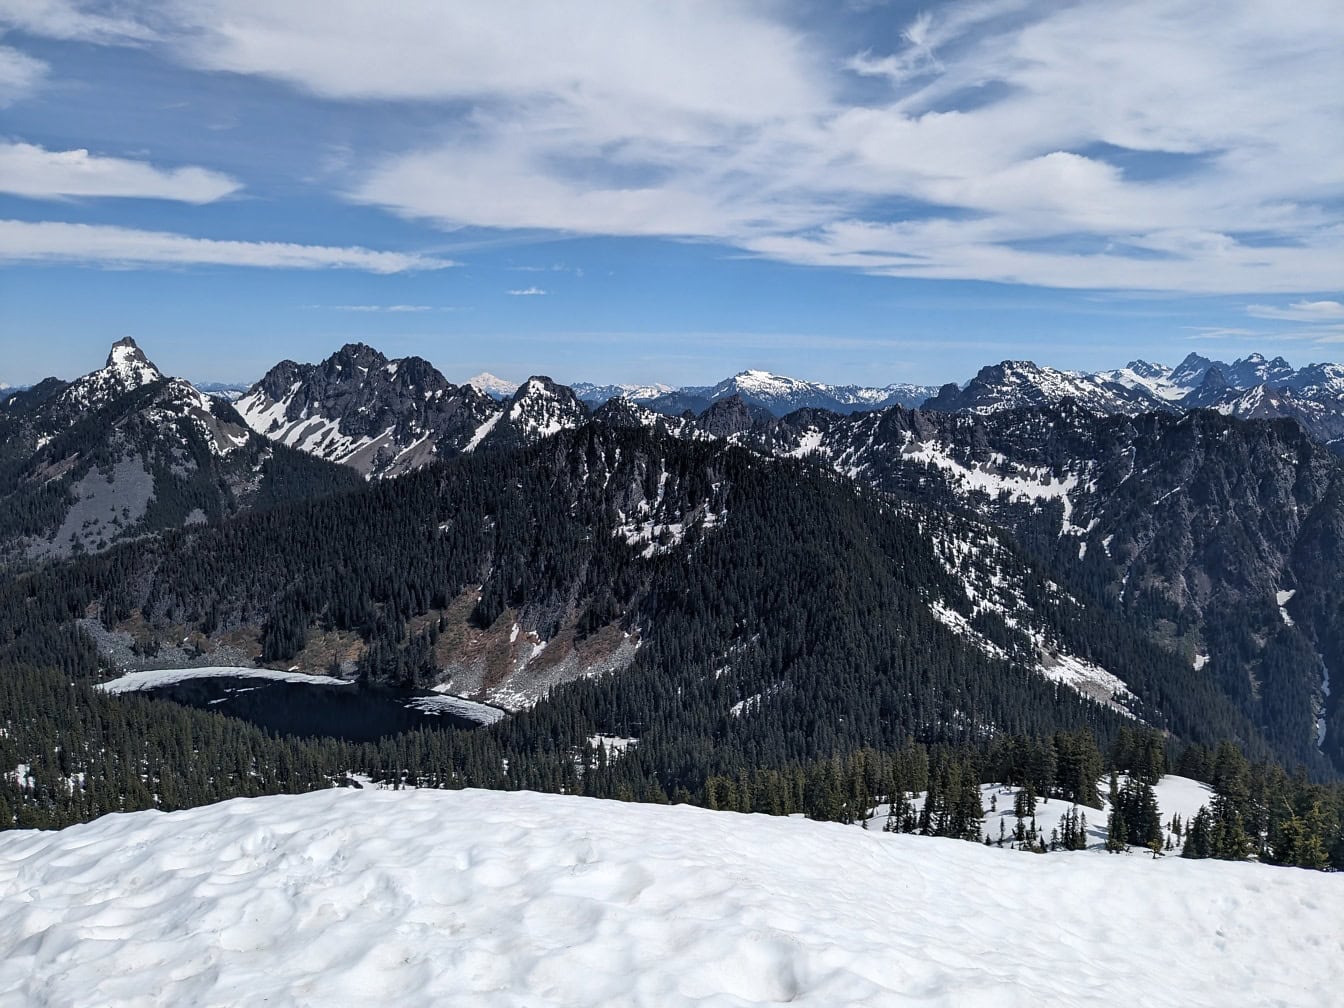 Vue de la montagne de granit dans l’État de Washington avec des sommets enneigés, des arbres et un lac